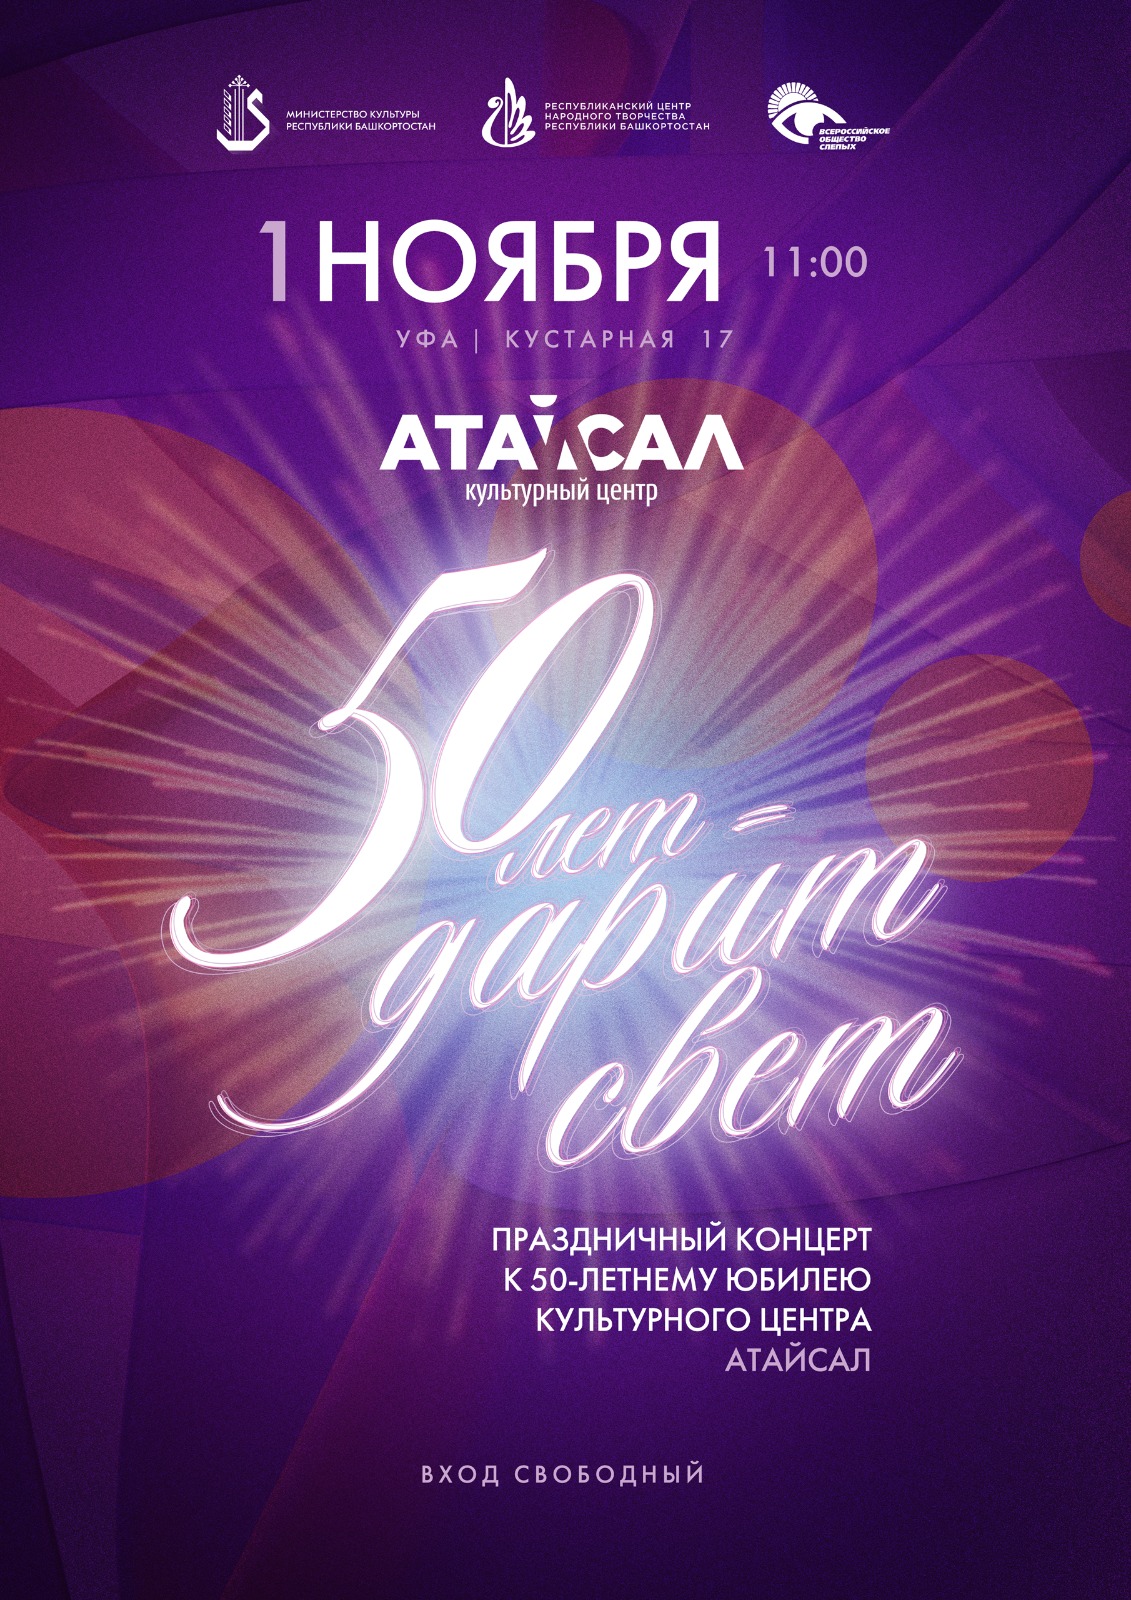 В Культурном центре «Атайсал» состоится праздничный концерт «50 лет - дарит свет»